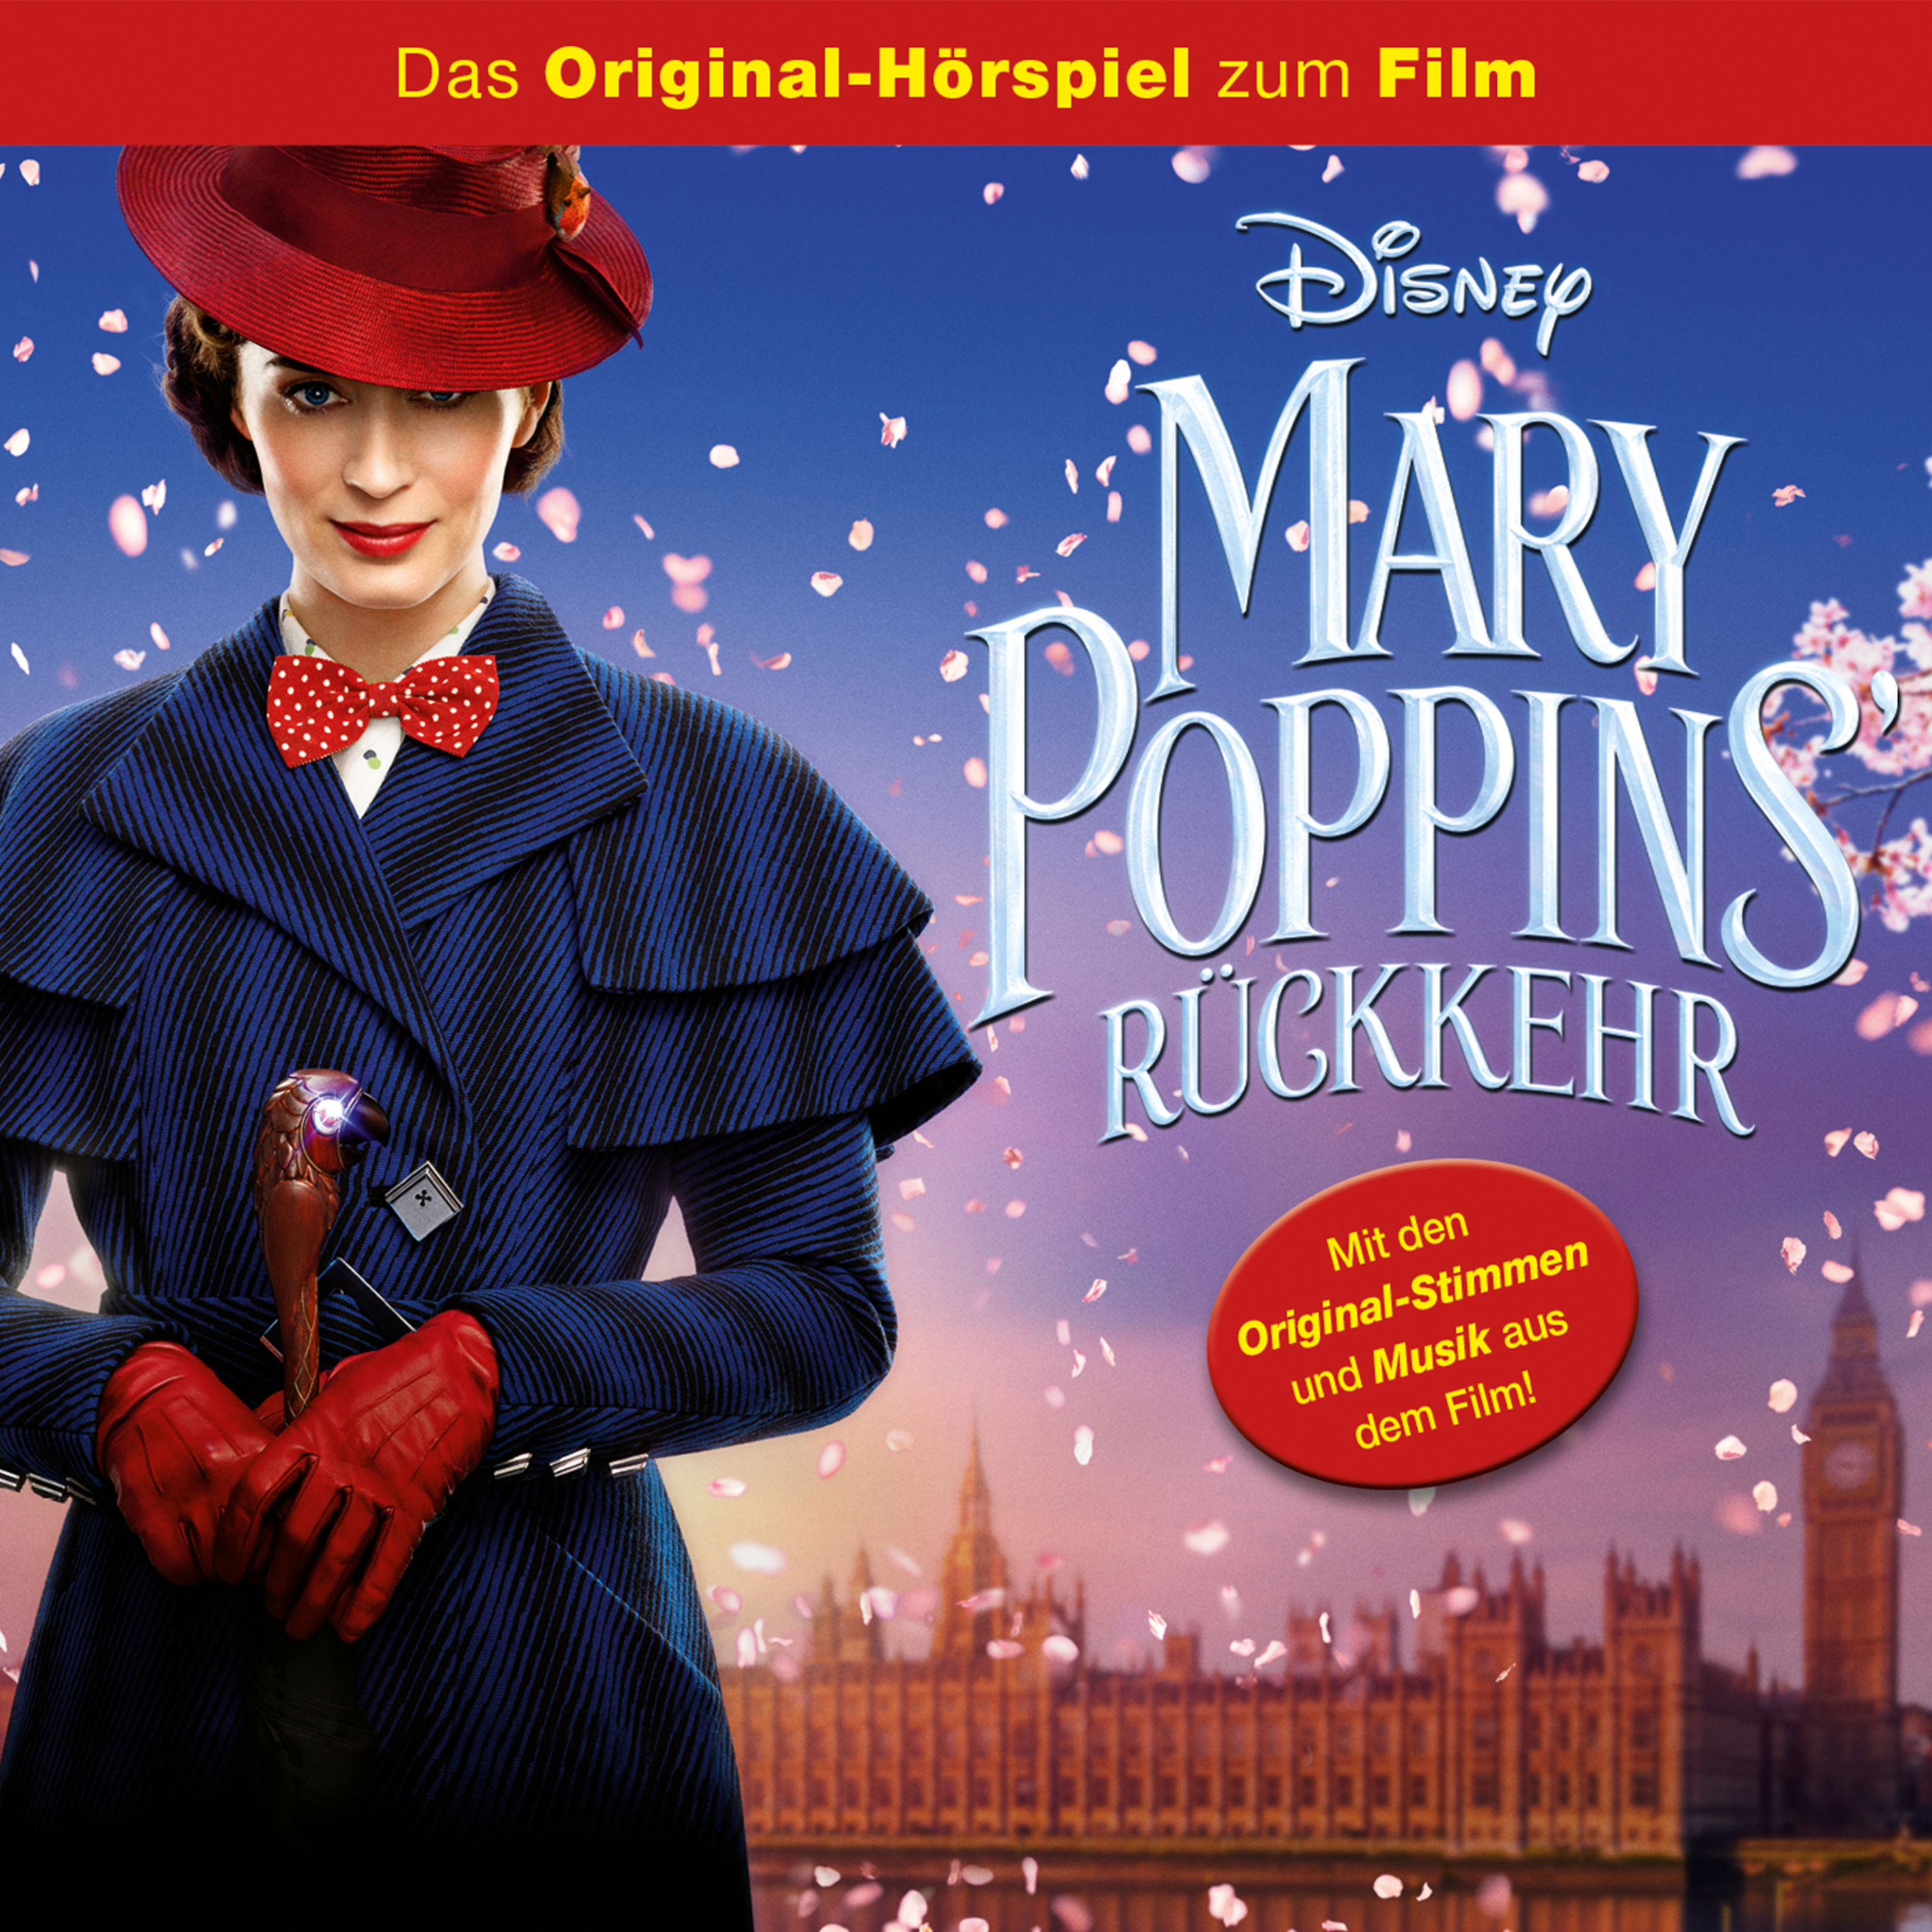 Disney Mary Poppins Ruckkehr Original Horspiel Zum Kinofilm Horbuch Download